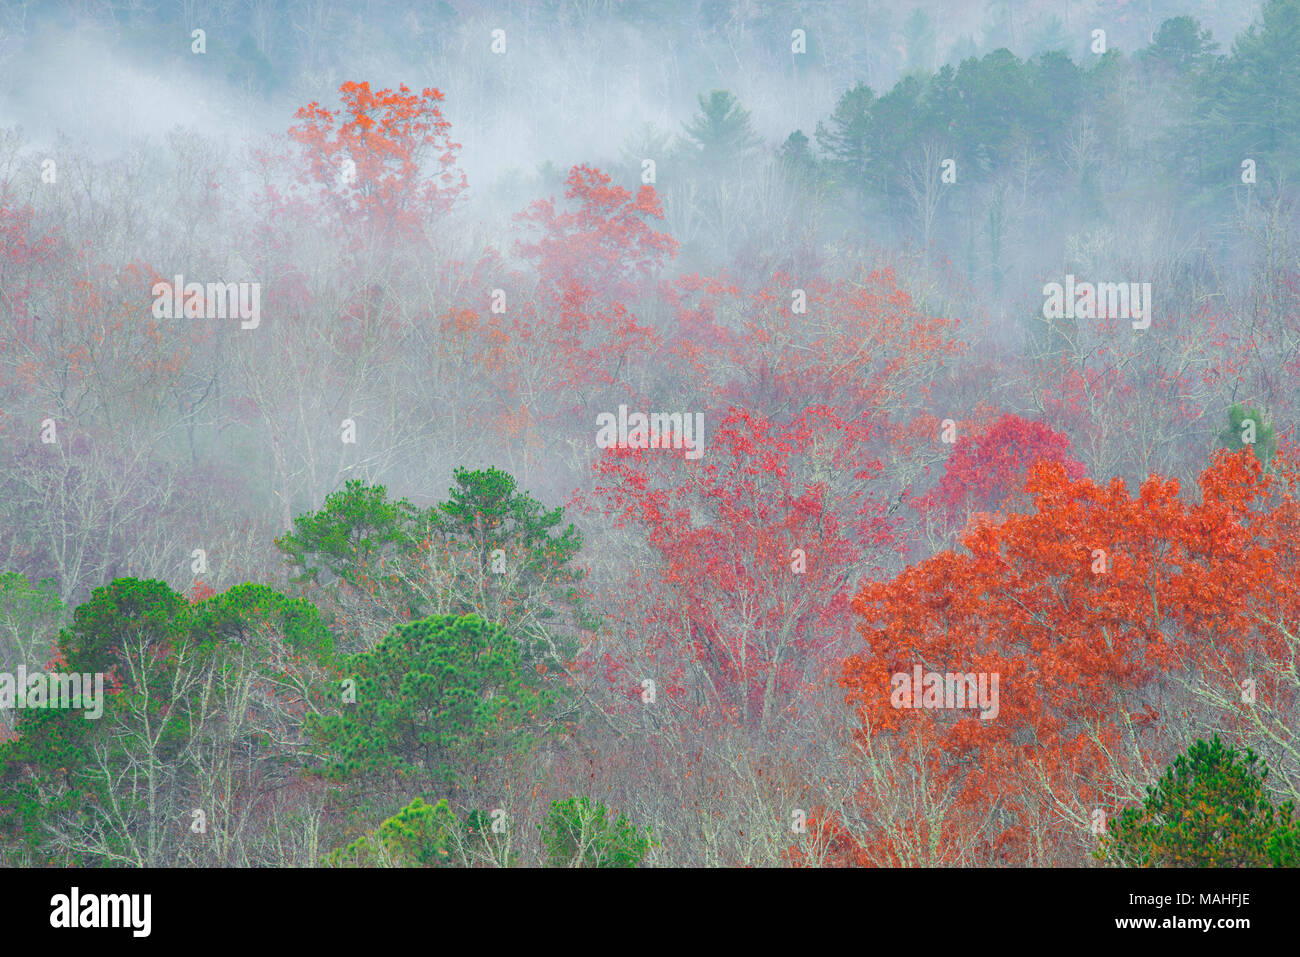 Steigende Nebel und Farben des Herbstes, Great Smoky Mountains National Park, TN, USA, von Bill Lea/Dembinsky Foto Assoc Stockfoto